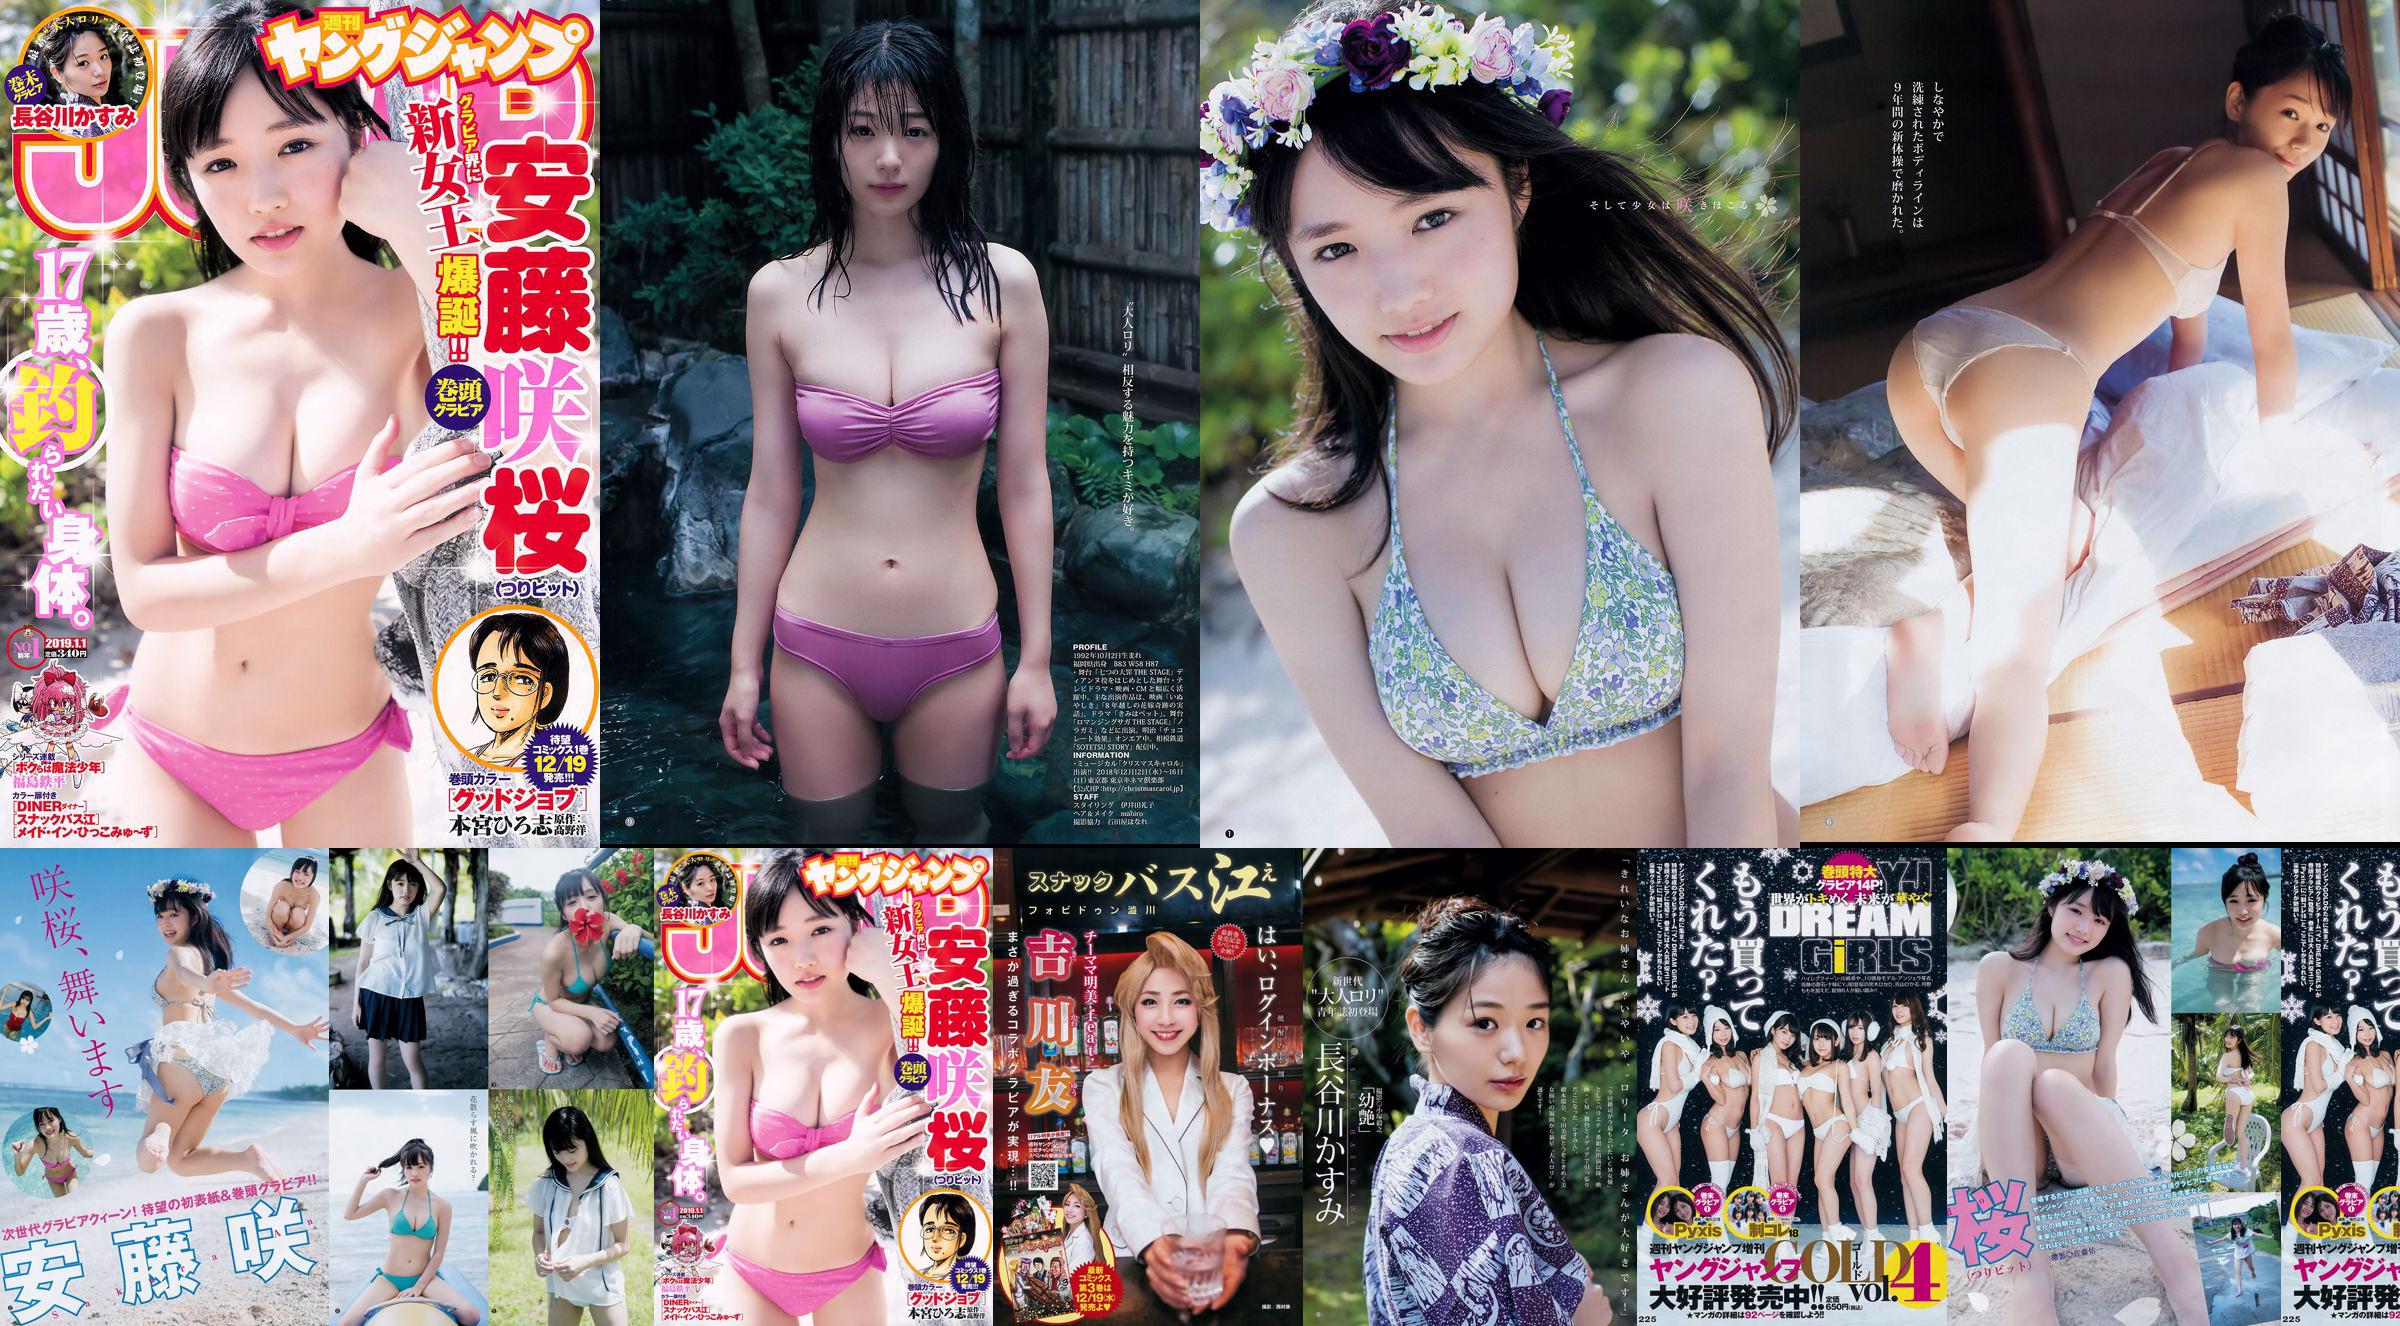 Sakura Ando Kasumi Hasegawa [Weekly Young Jump] Magazine photo n ° 01 2019 No.9bea9a Page 1